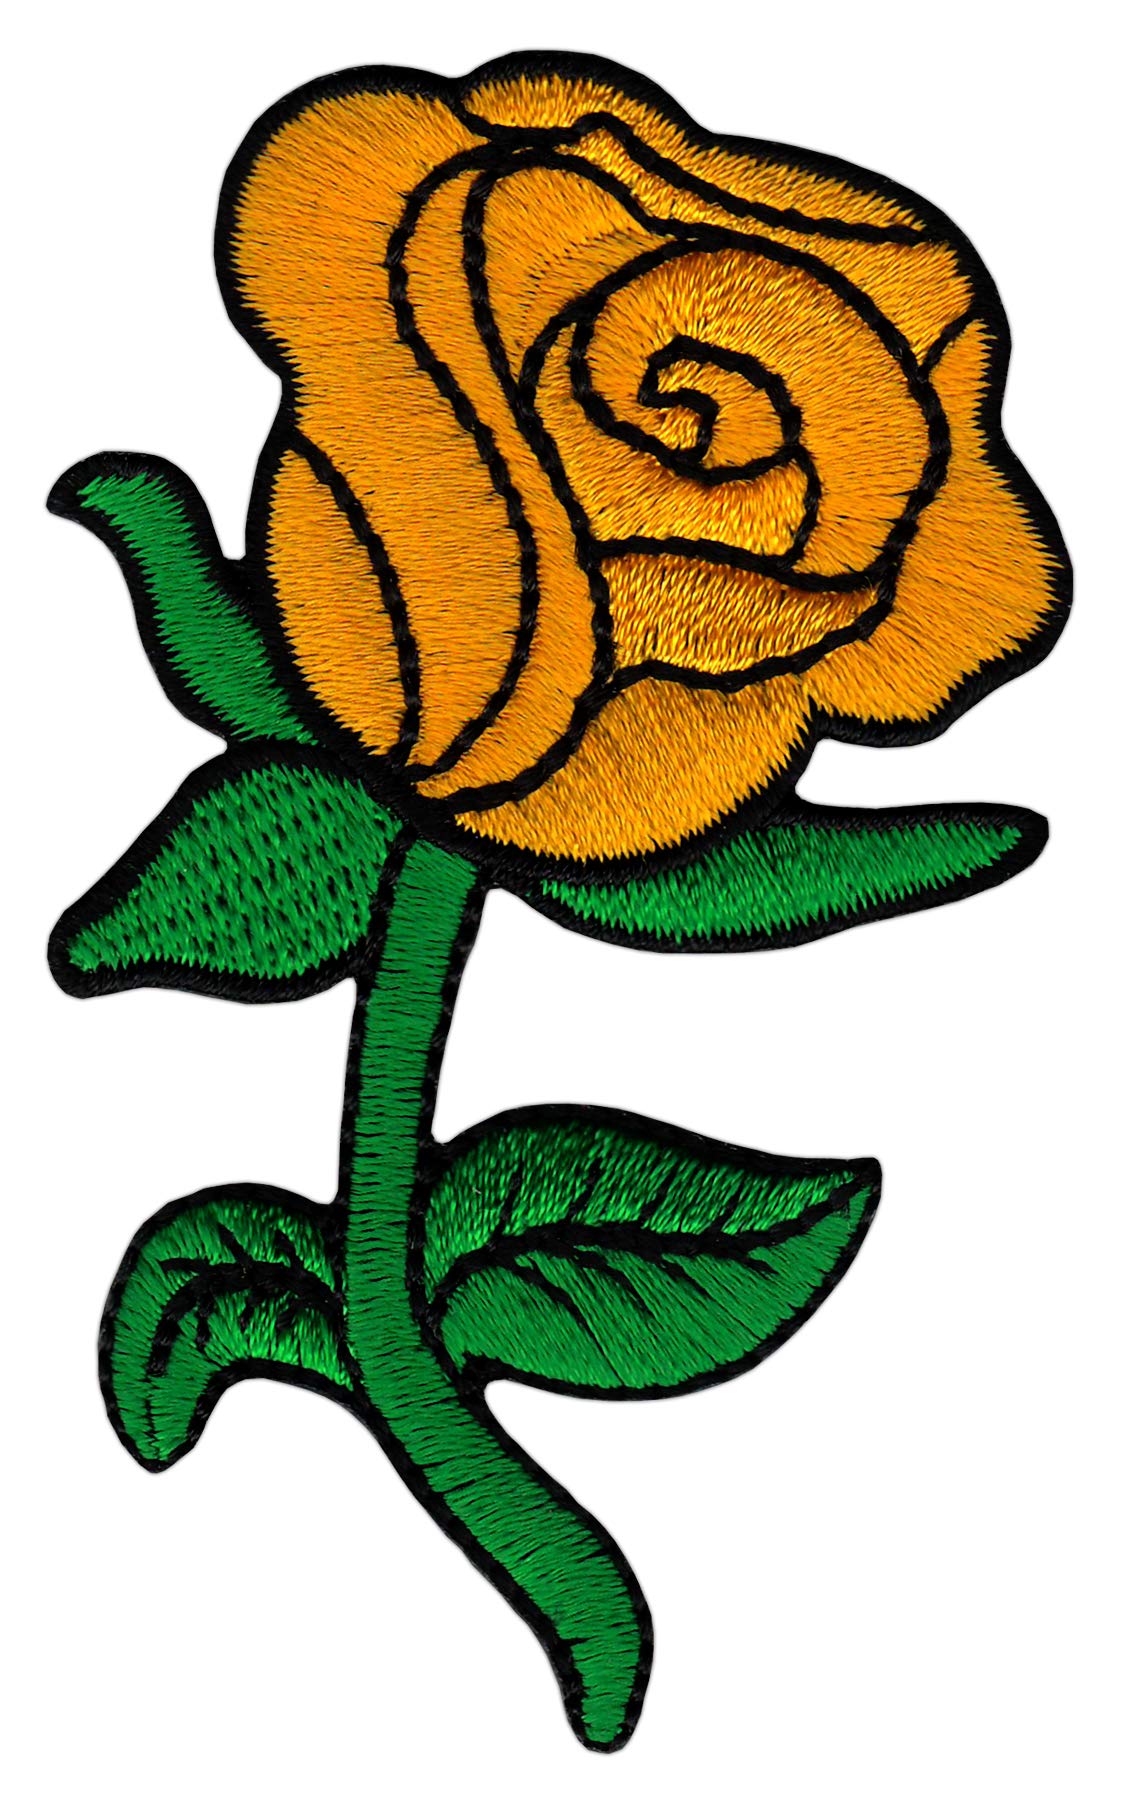 Gelbe Rose Blume Aufnäher Bügelbild Patch Größe 5,0 x 8,3 cm von Bestellmich / Aufnäher